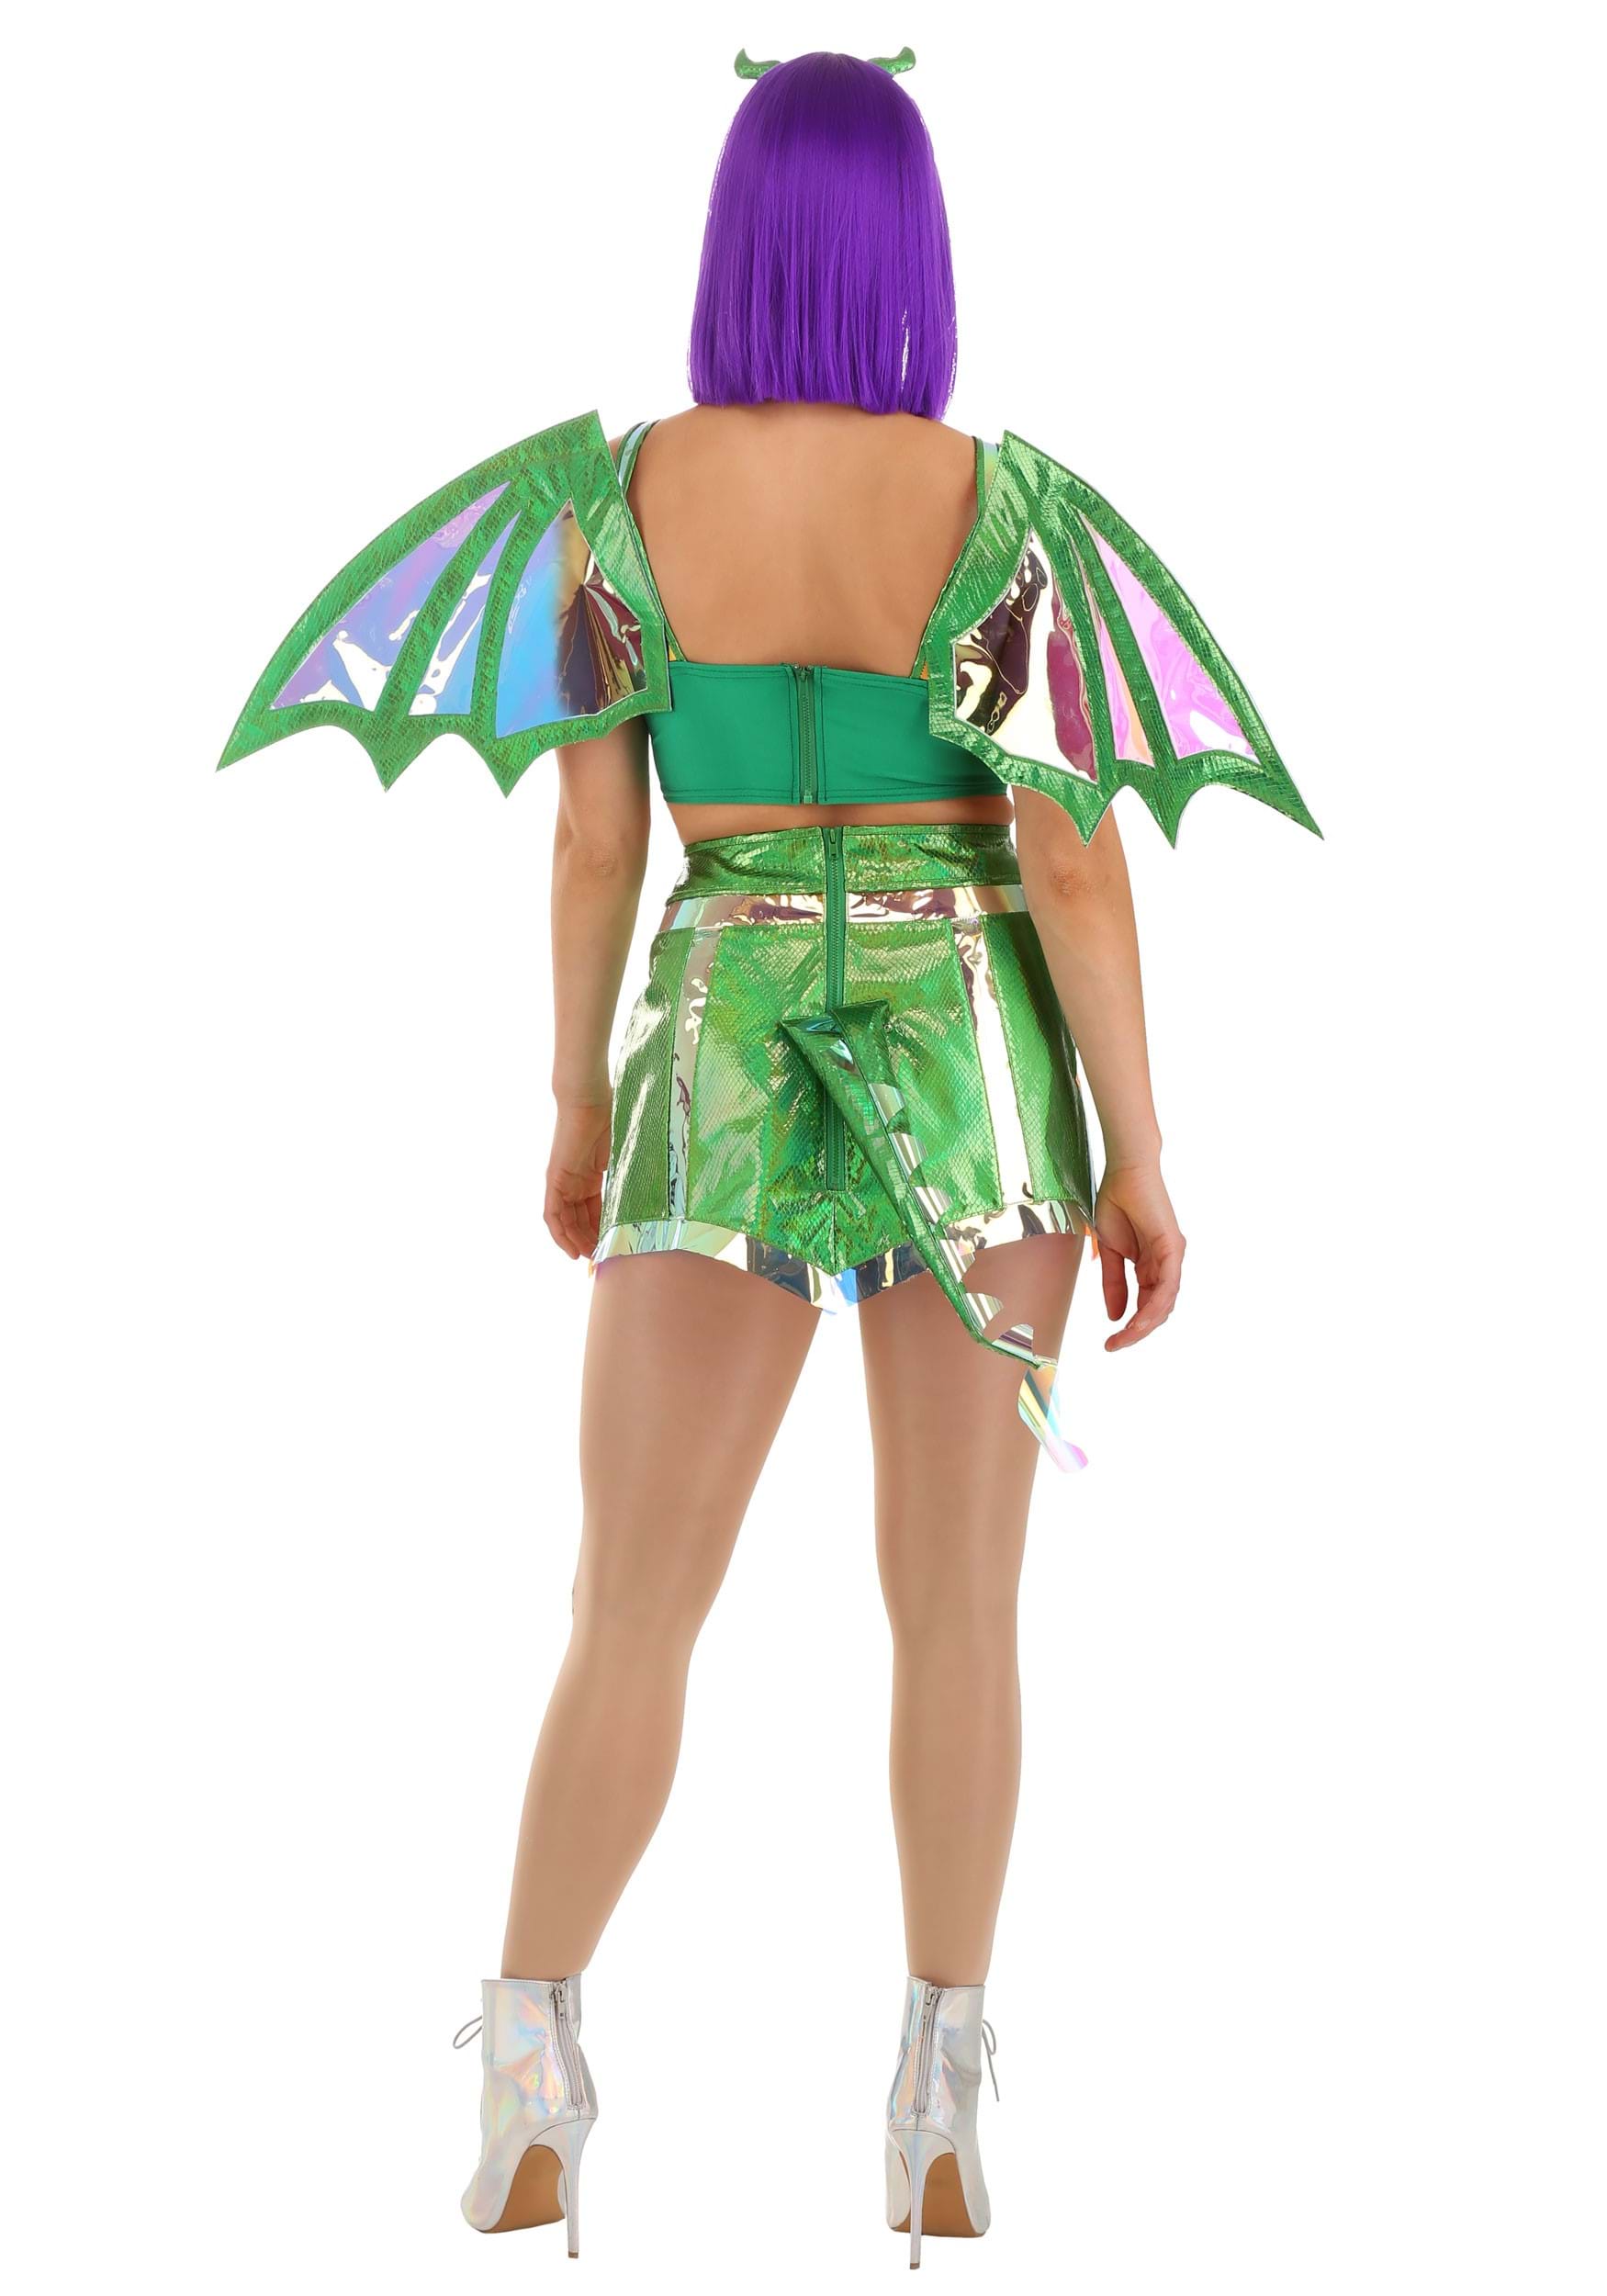 Dreamscape Women's Emerald Dragon Costume